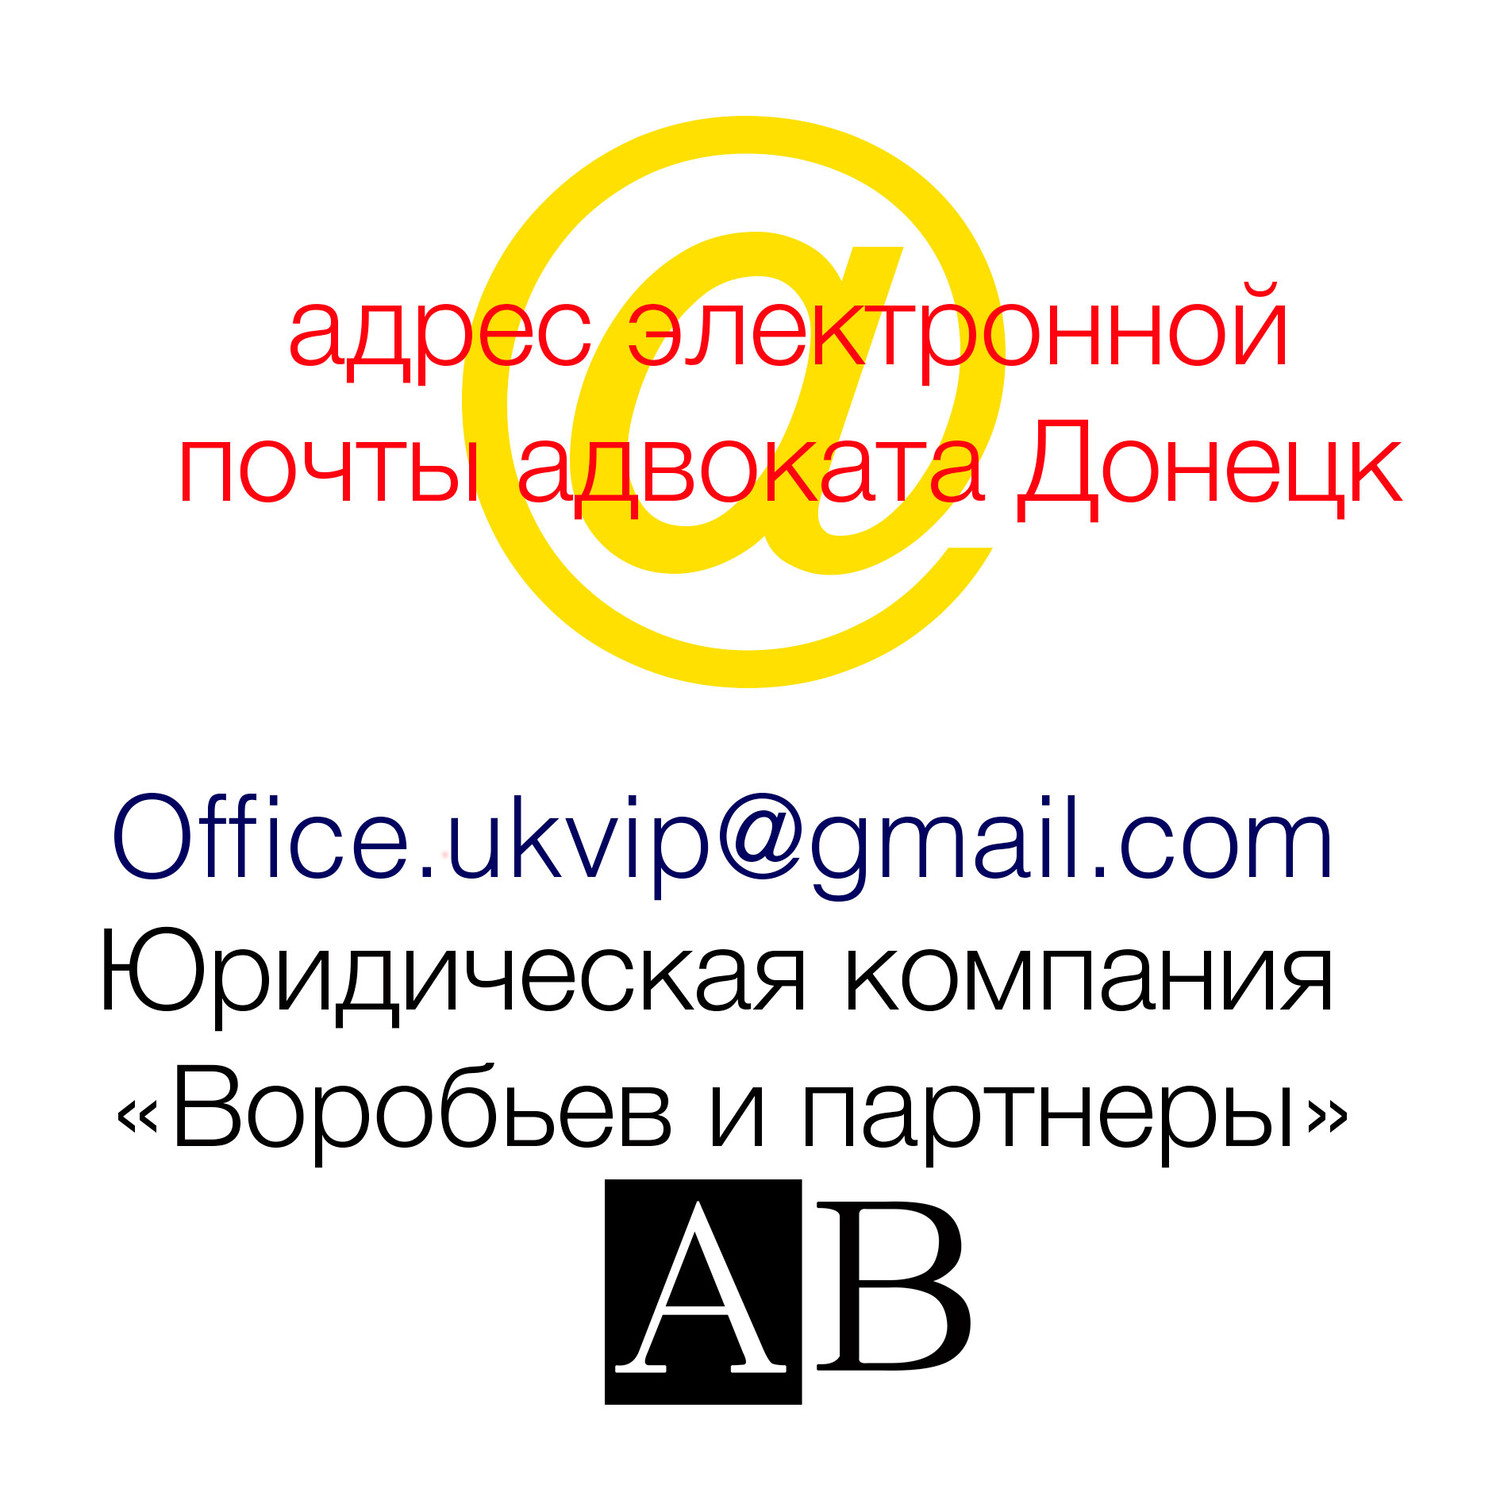 новый единый для всех вопросов адрес электронной почты адвокатов Донецка